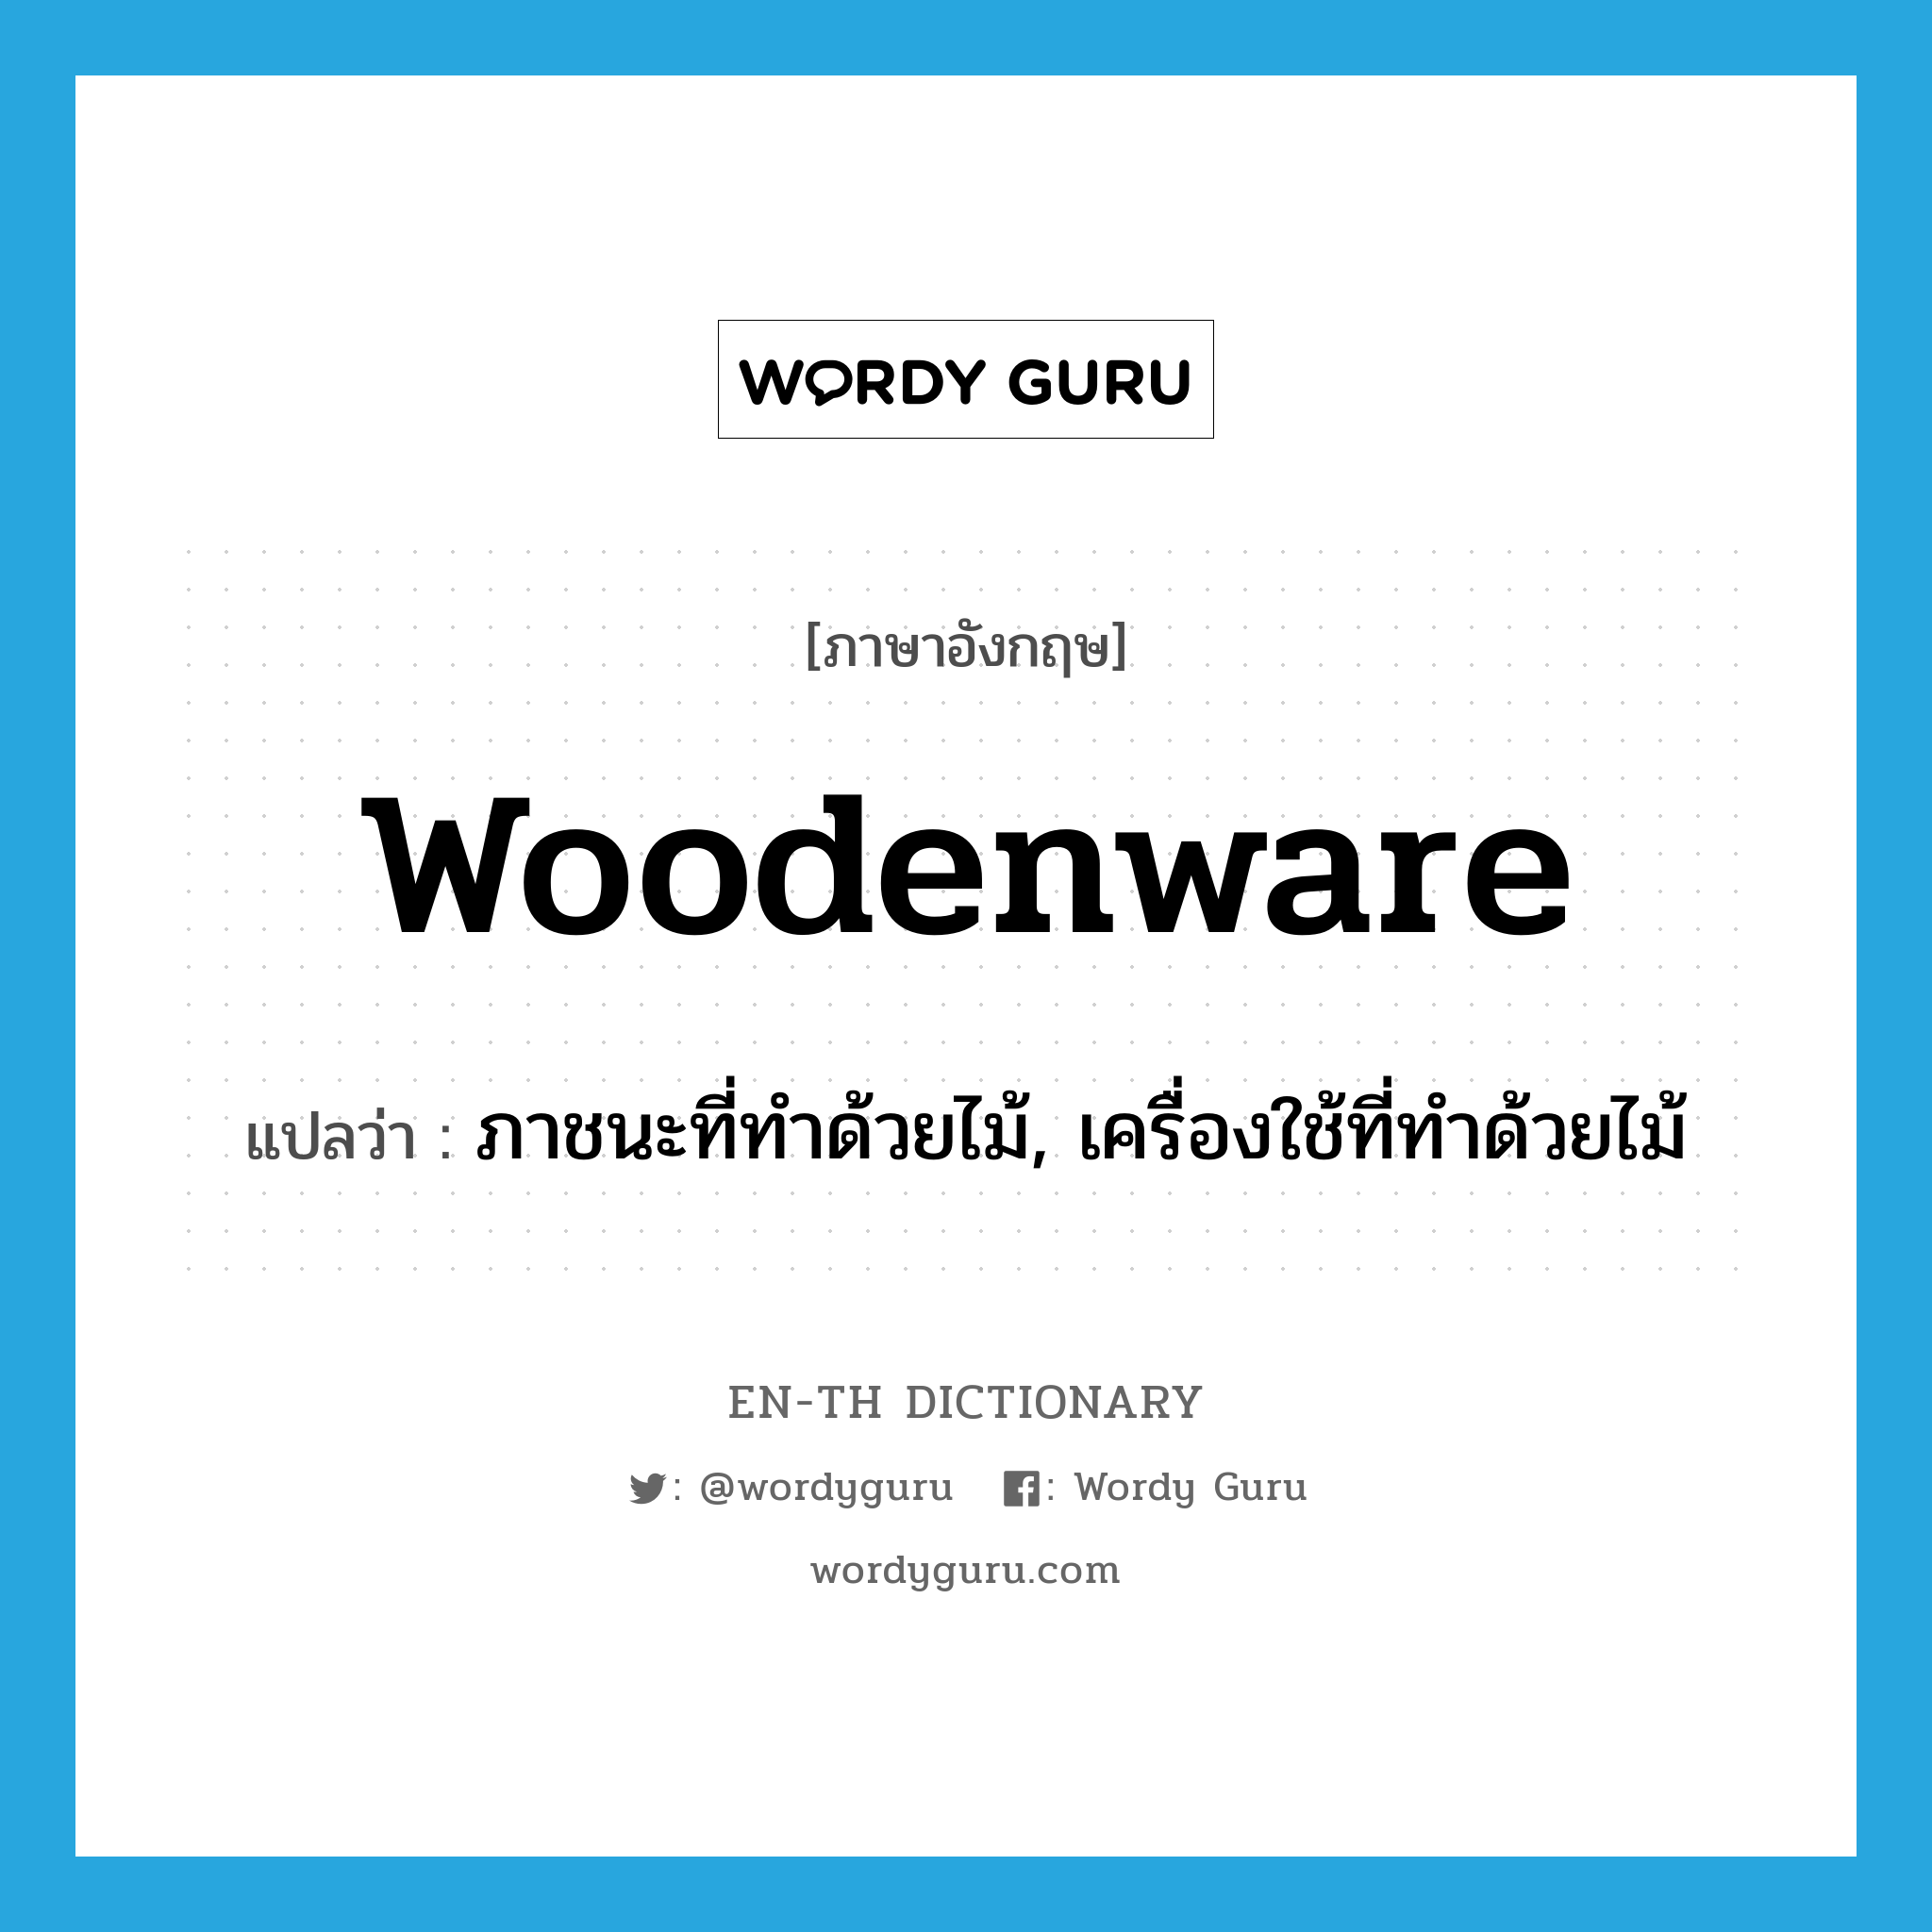 woodenware แปลว่า?, คำศัพท์ภาษาอังกฤษ woodenware แปลว่า ภาชนะที่ทำด้วยไม้, เครื่องใช้ที่ทำด้วยไม้ ประเภท N หมวด N